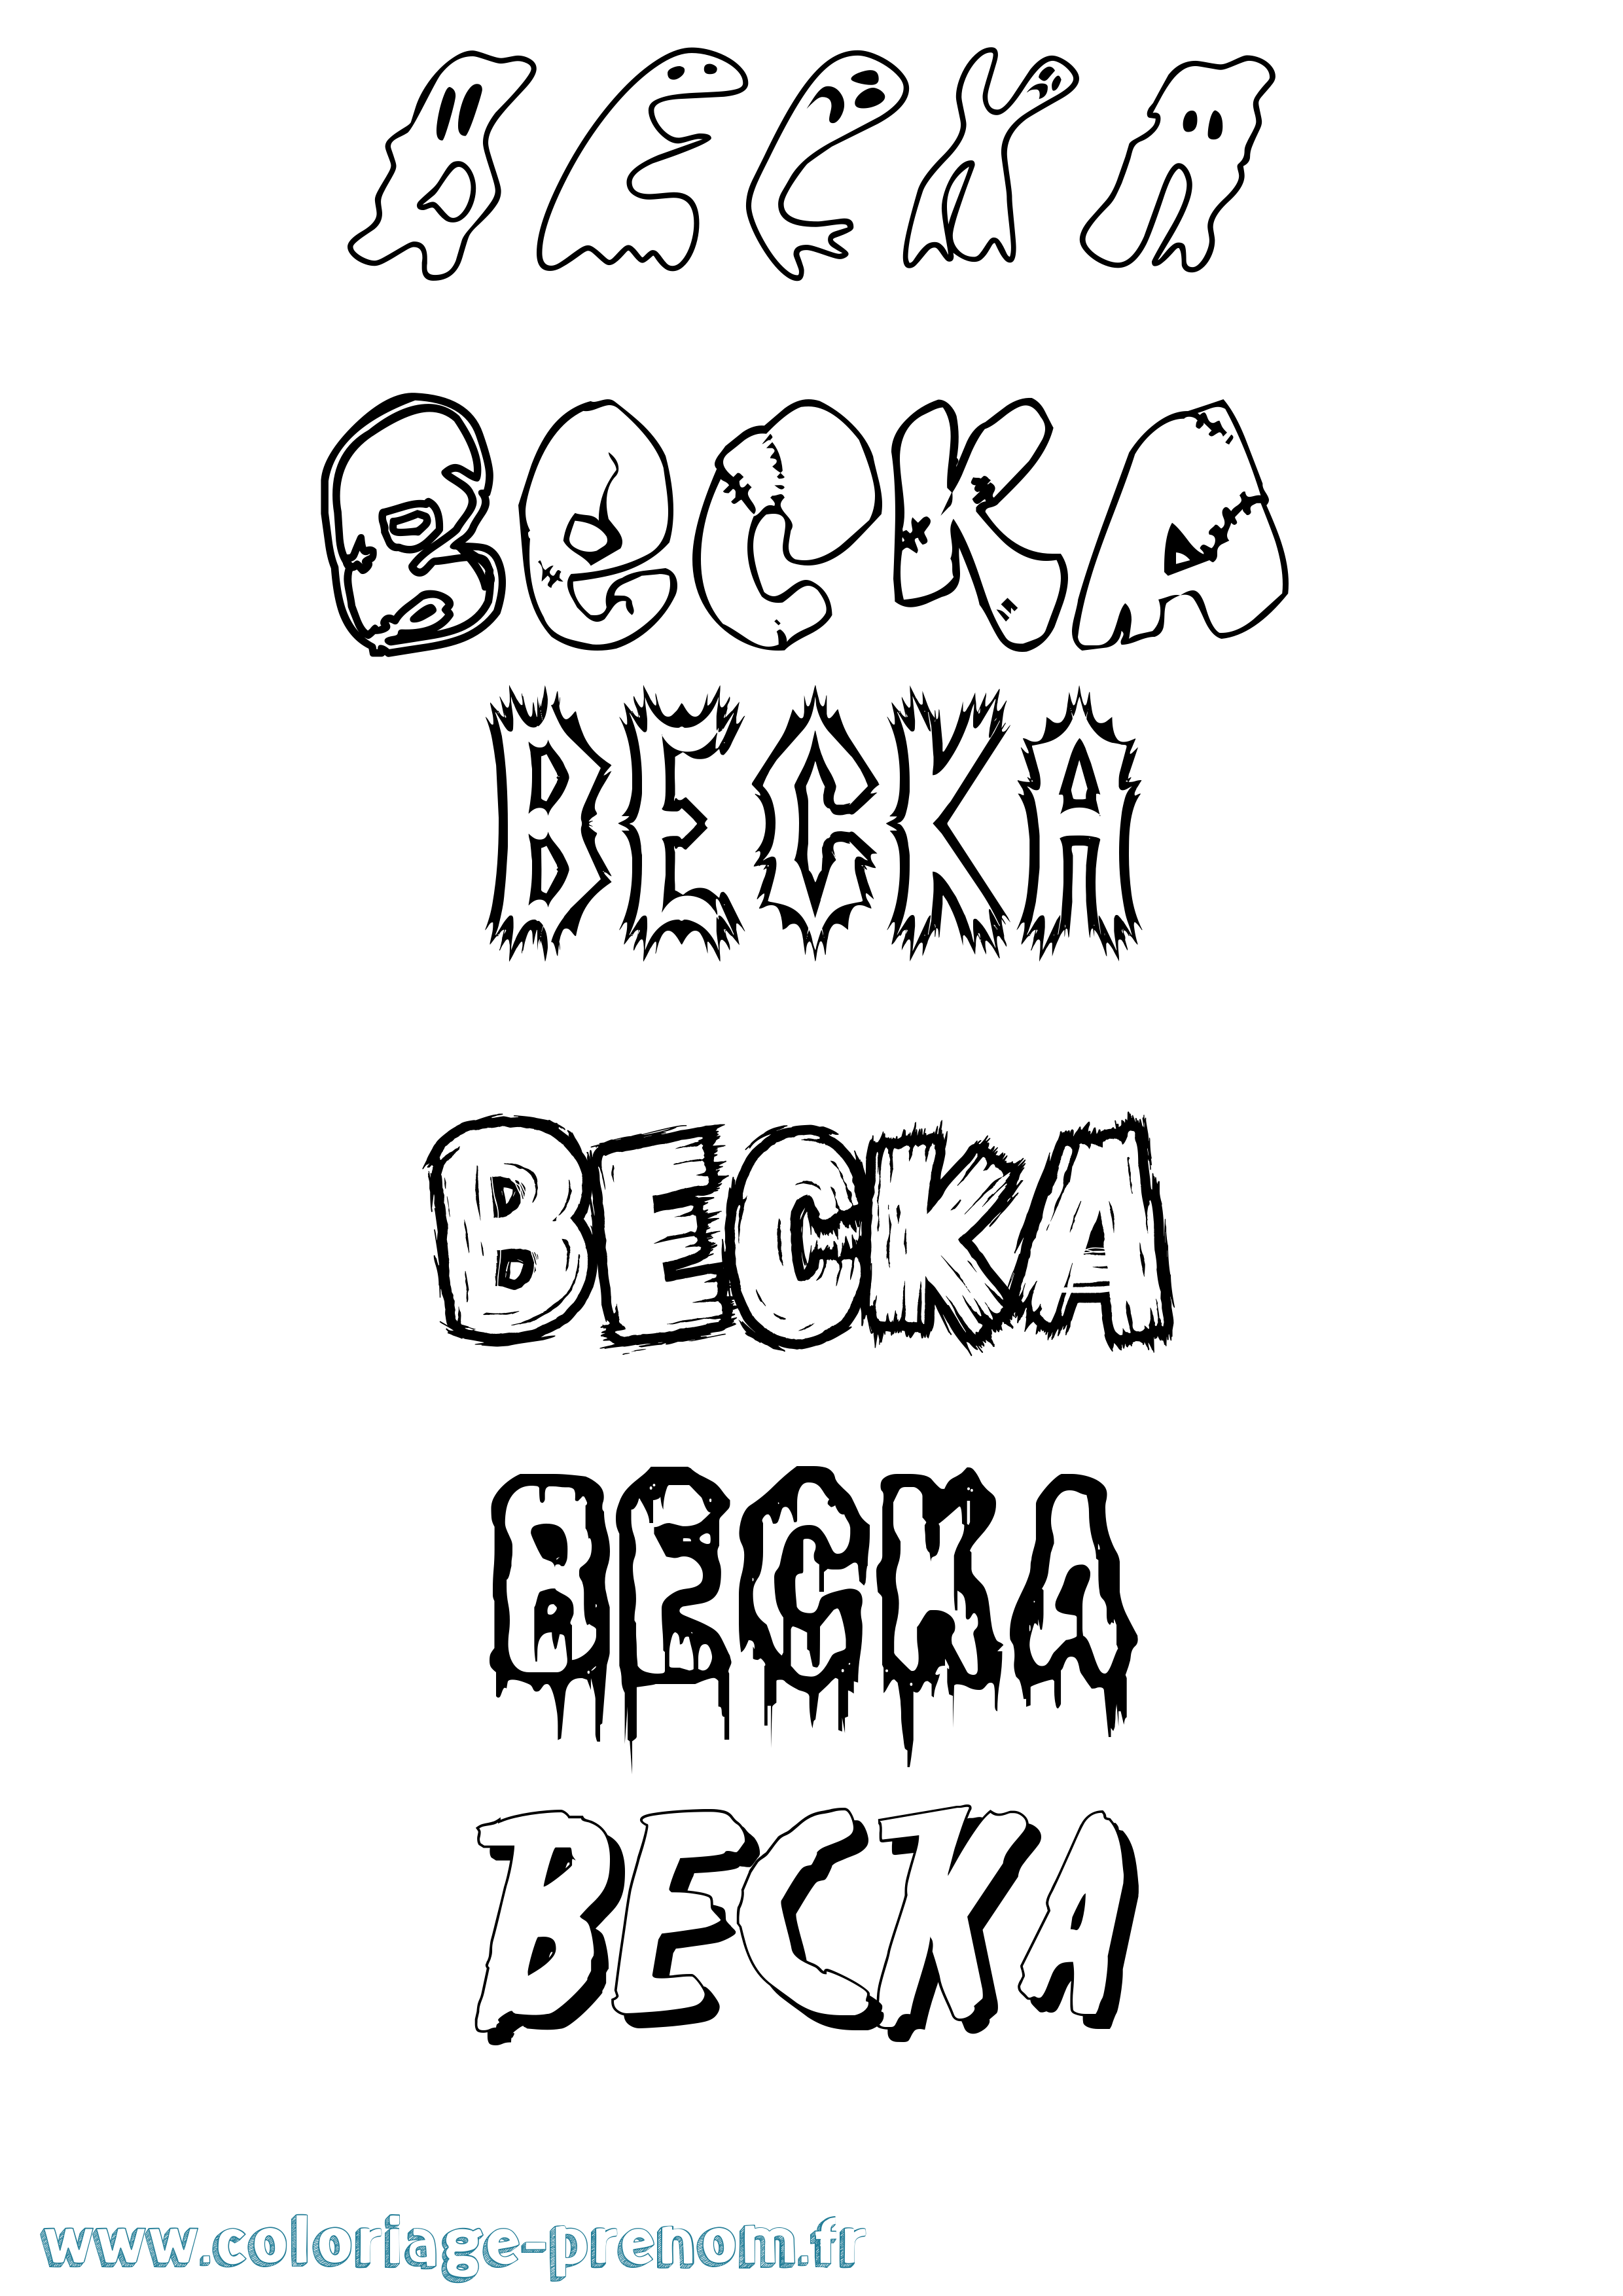 Coloriage prénom Becka Frisson